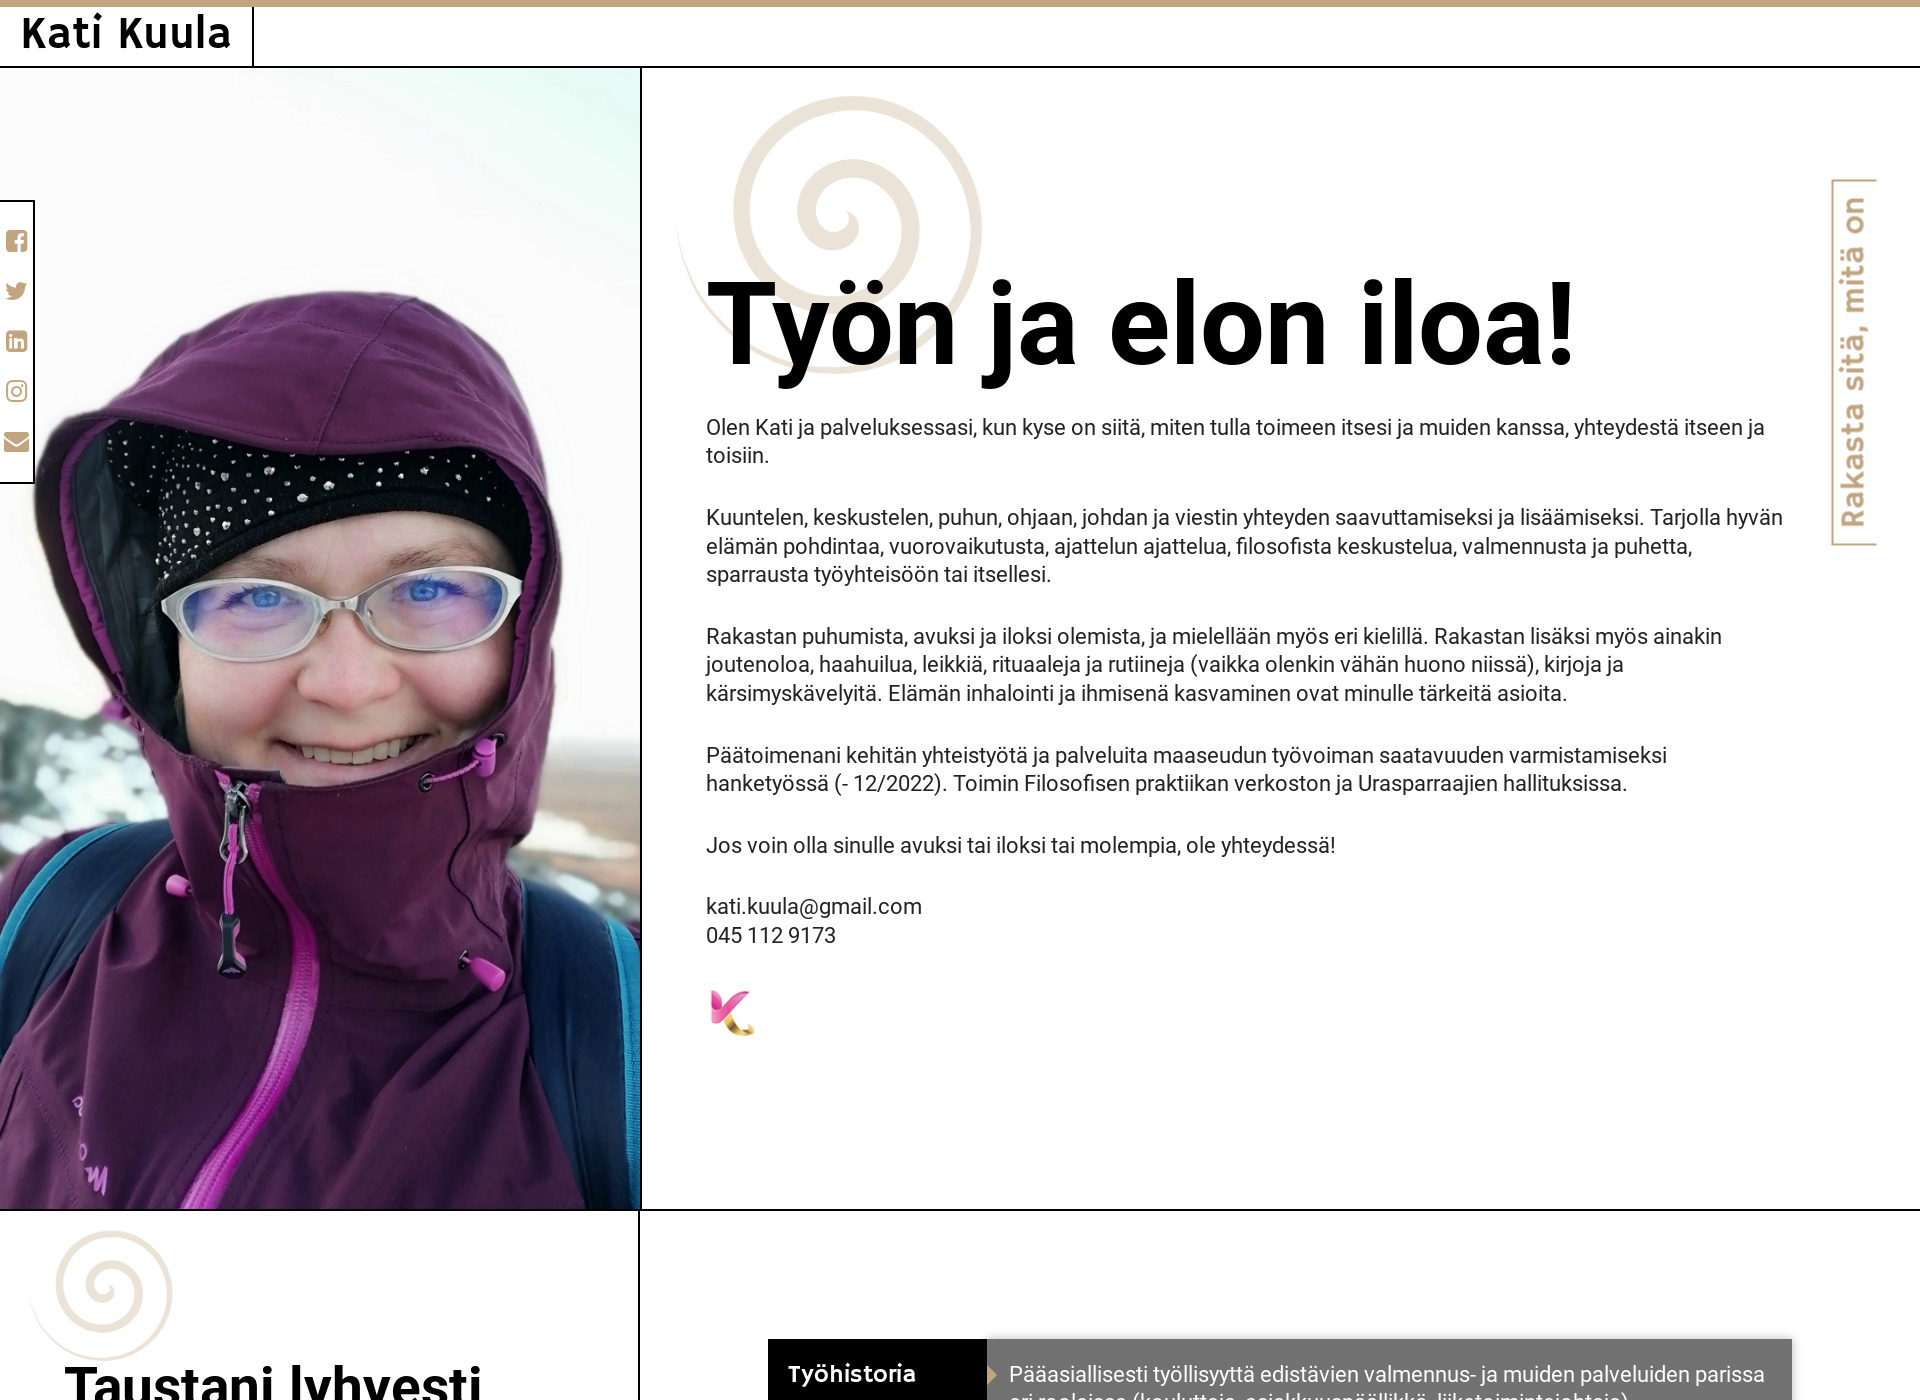 Näyttökuva katikuula.fi